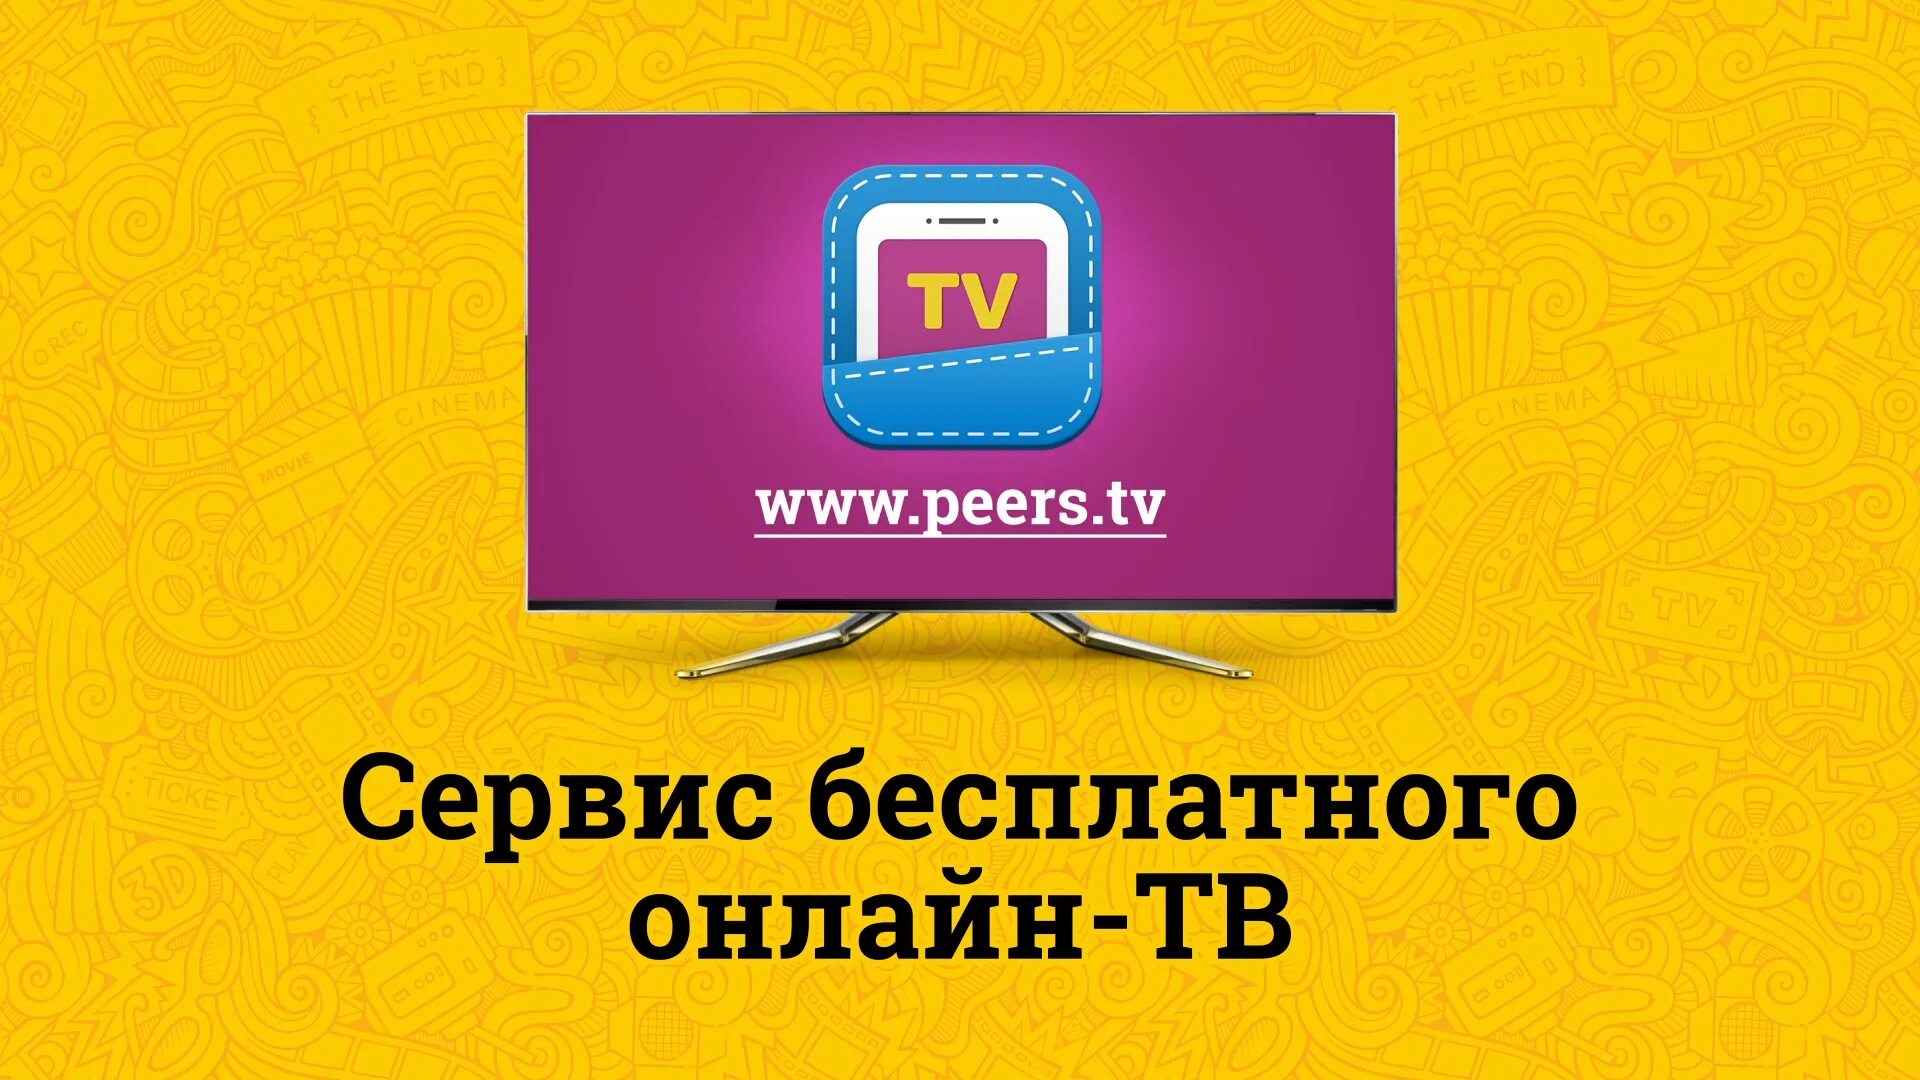 Peers TV. Peers TV логотип. Перс ТВ. Пирс ТВ каналы.